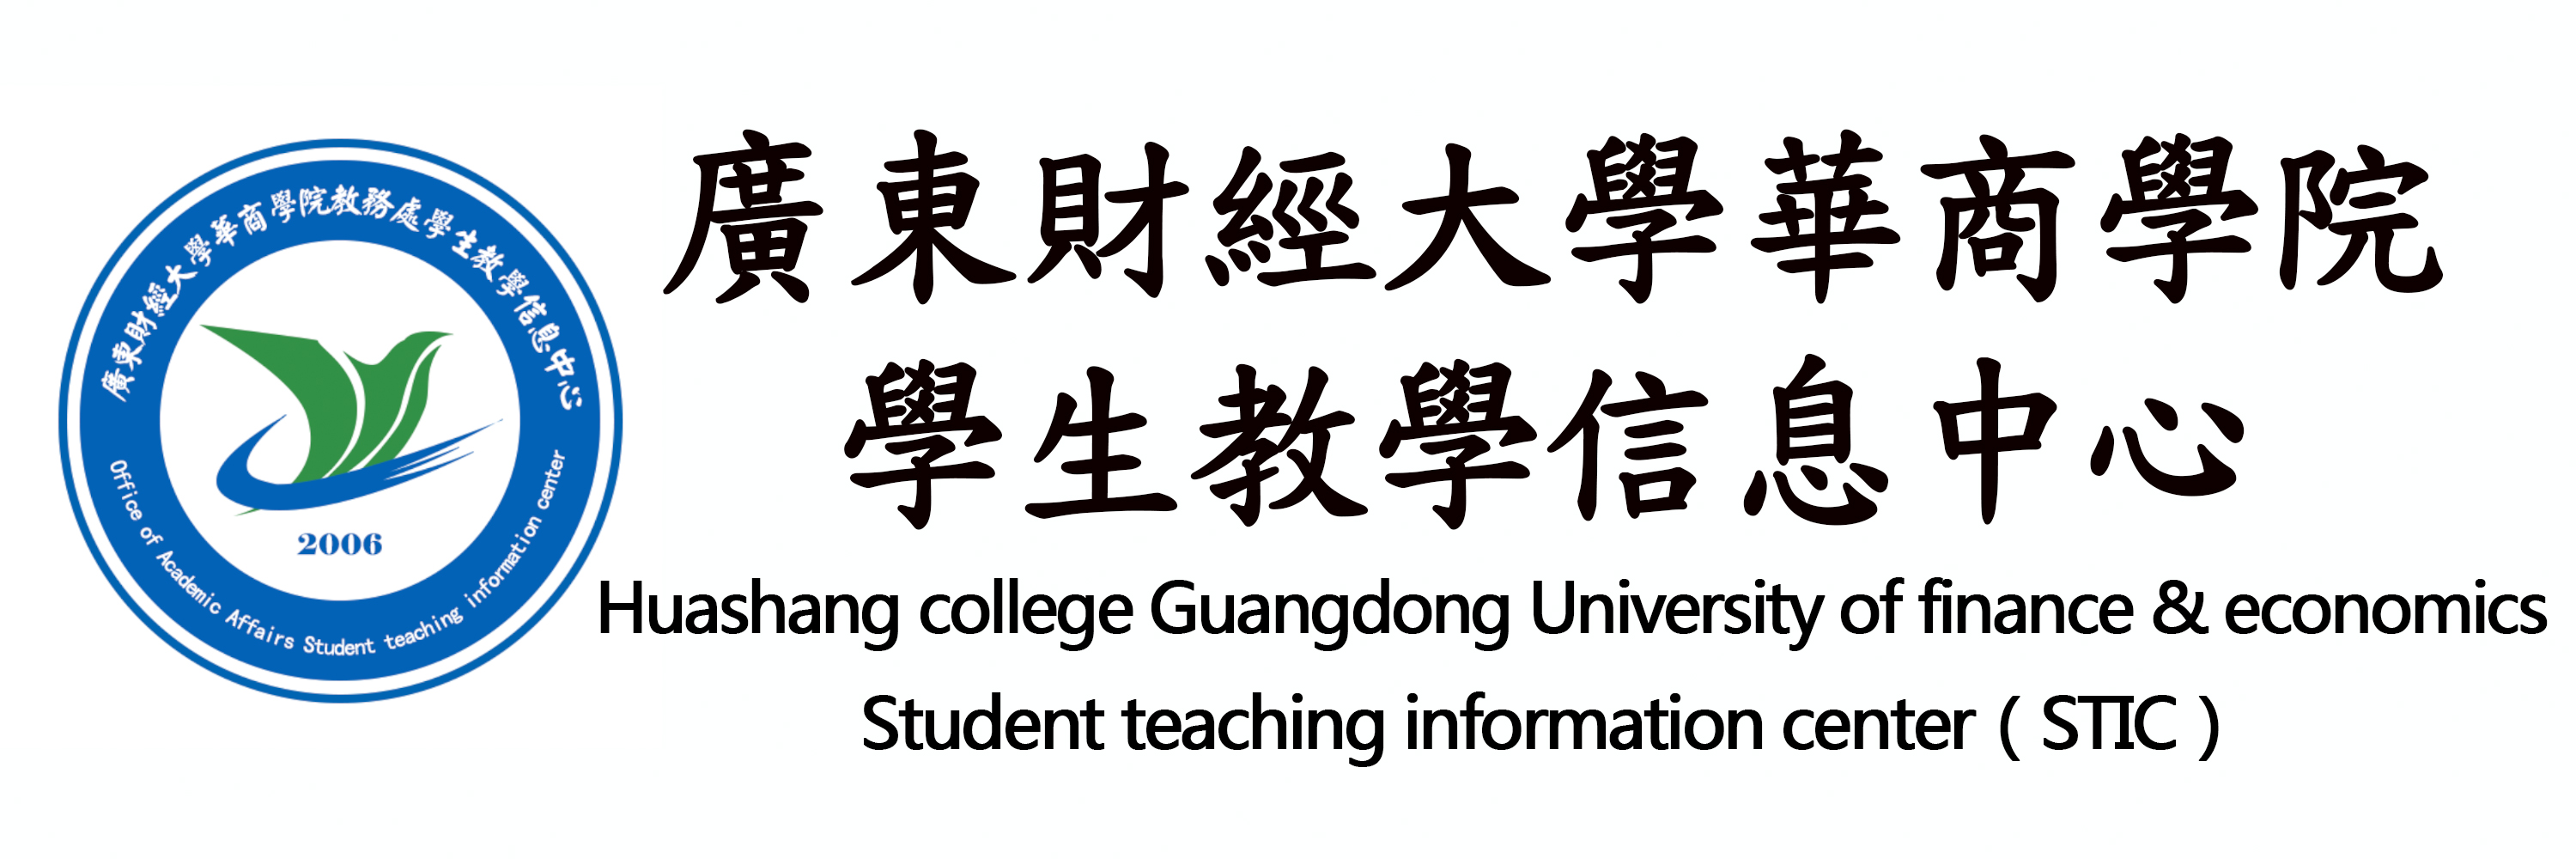 廣州華商學院教務處學生教學信息中心